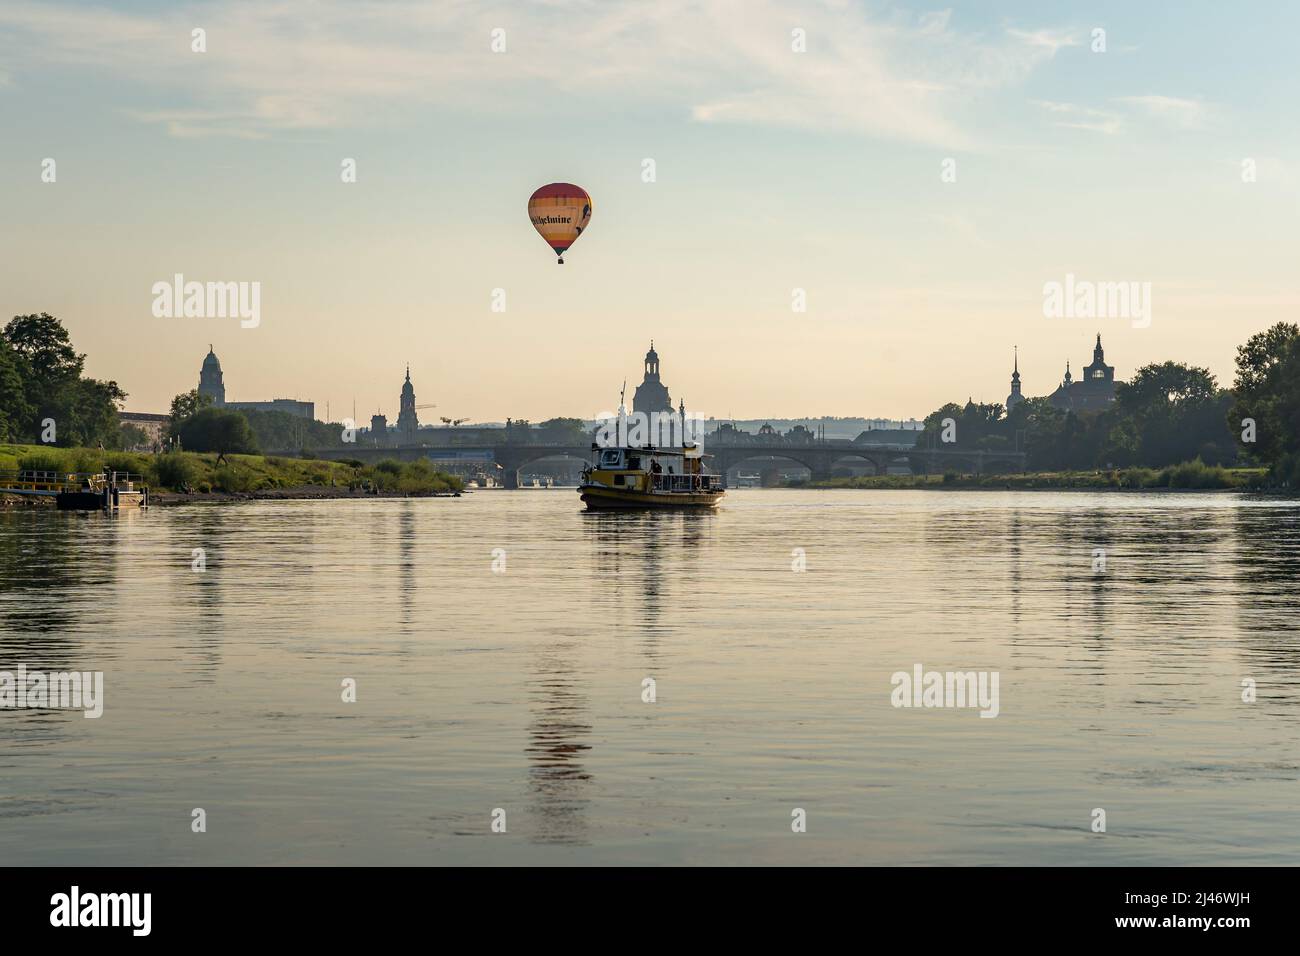 Un pequeño barco y un globo aerostático frente al famoso horizonte de la ciudad de Dresden. Diferentes modos de transporte en la ciudad. Edificios famosos. Foto de stock